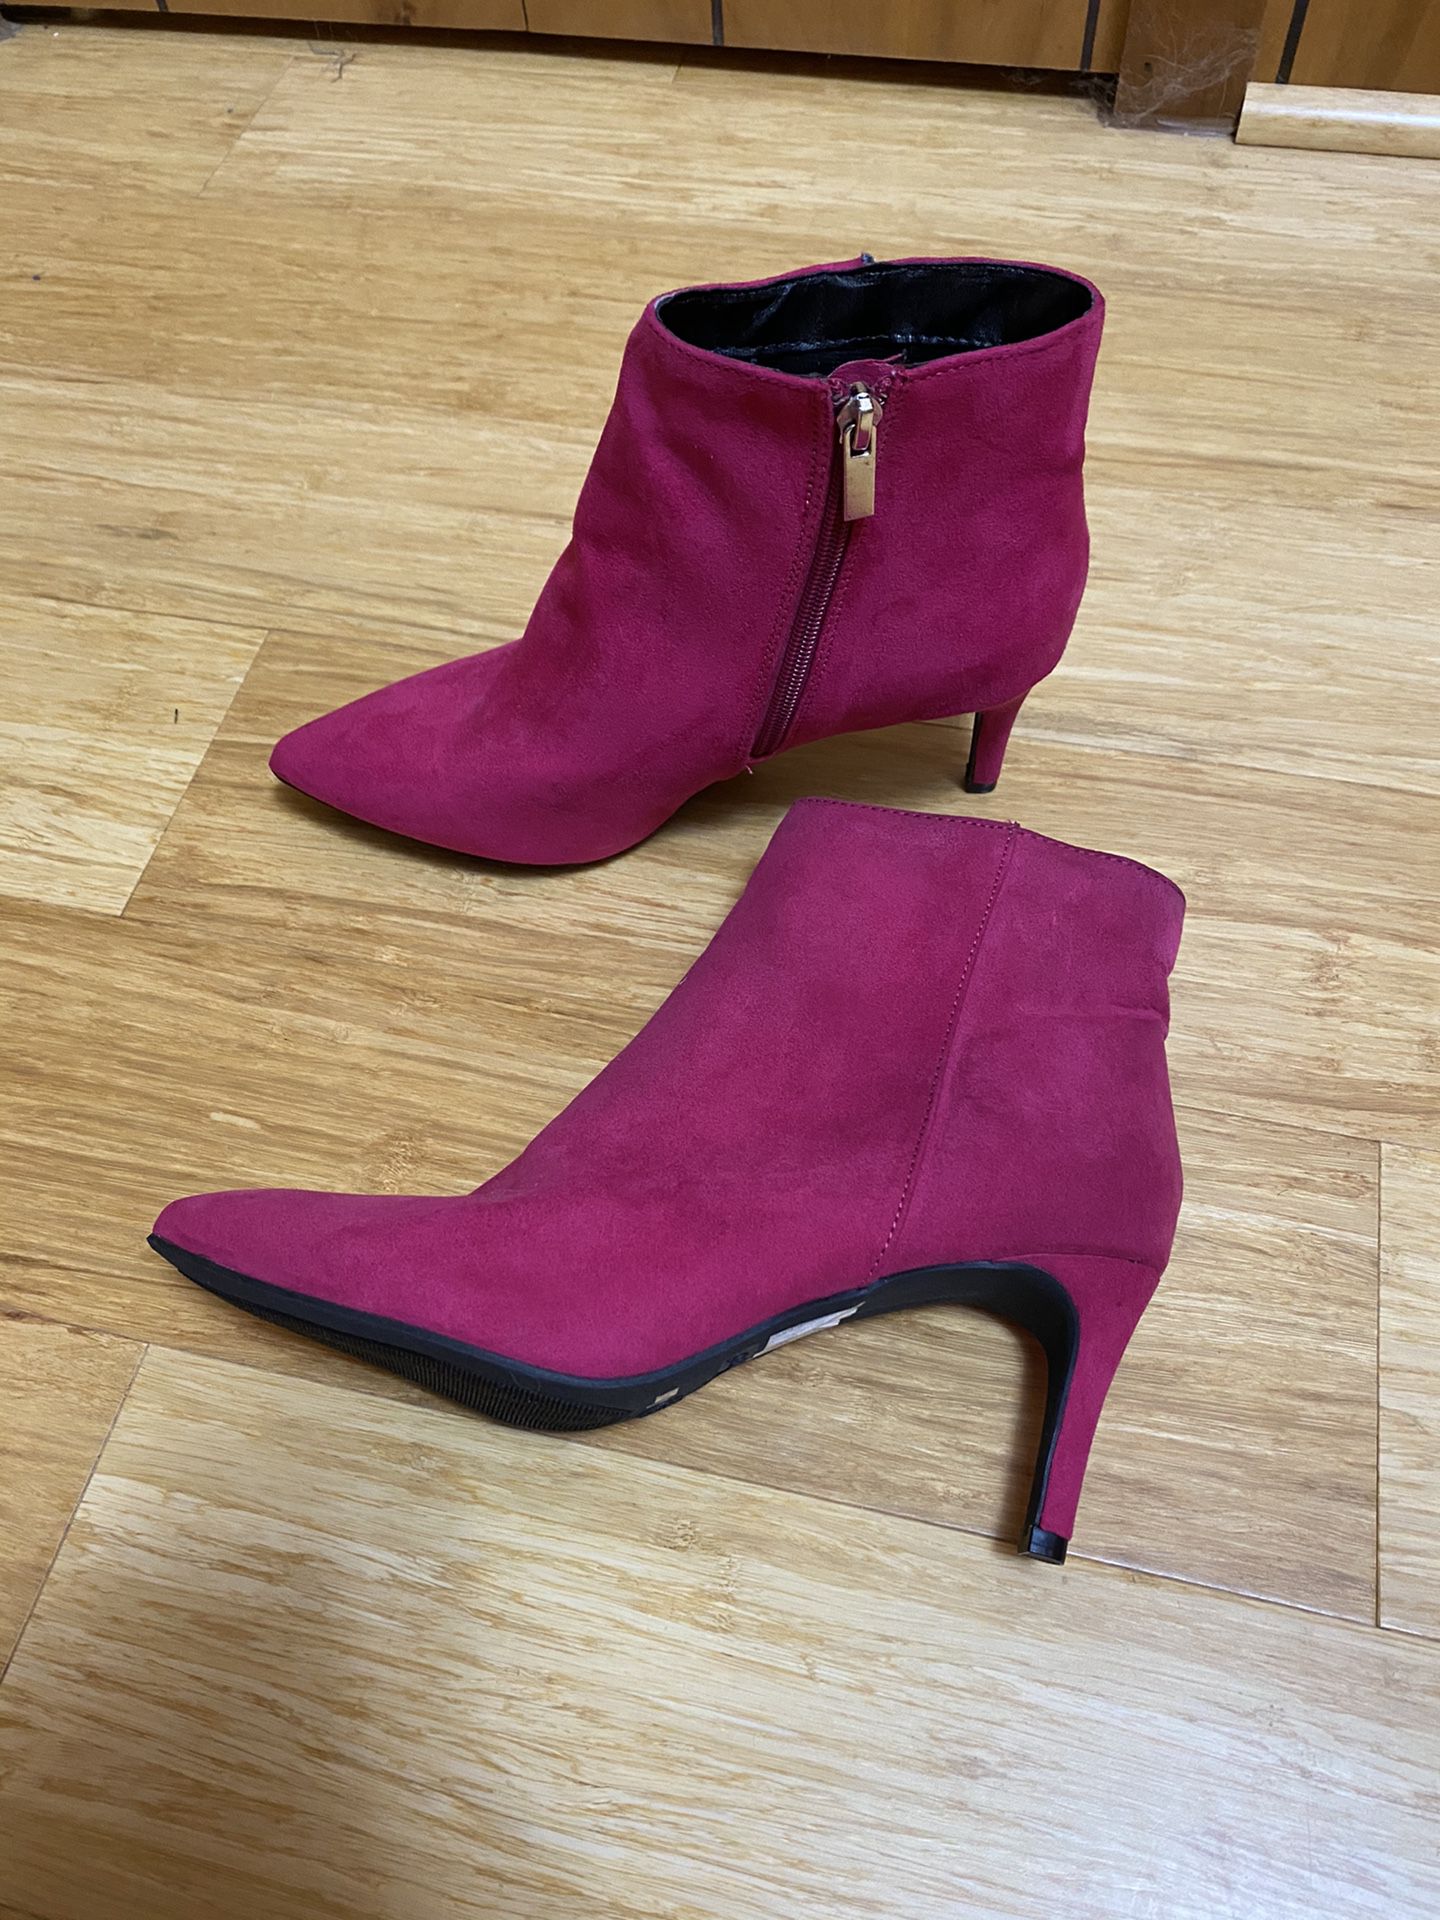 NEW pink suede heeled booties